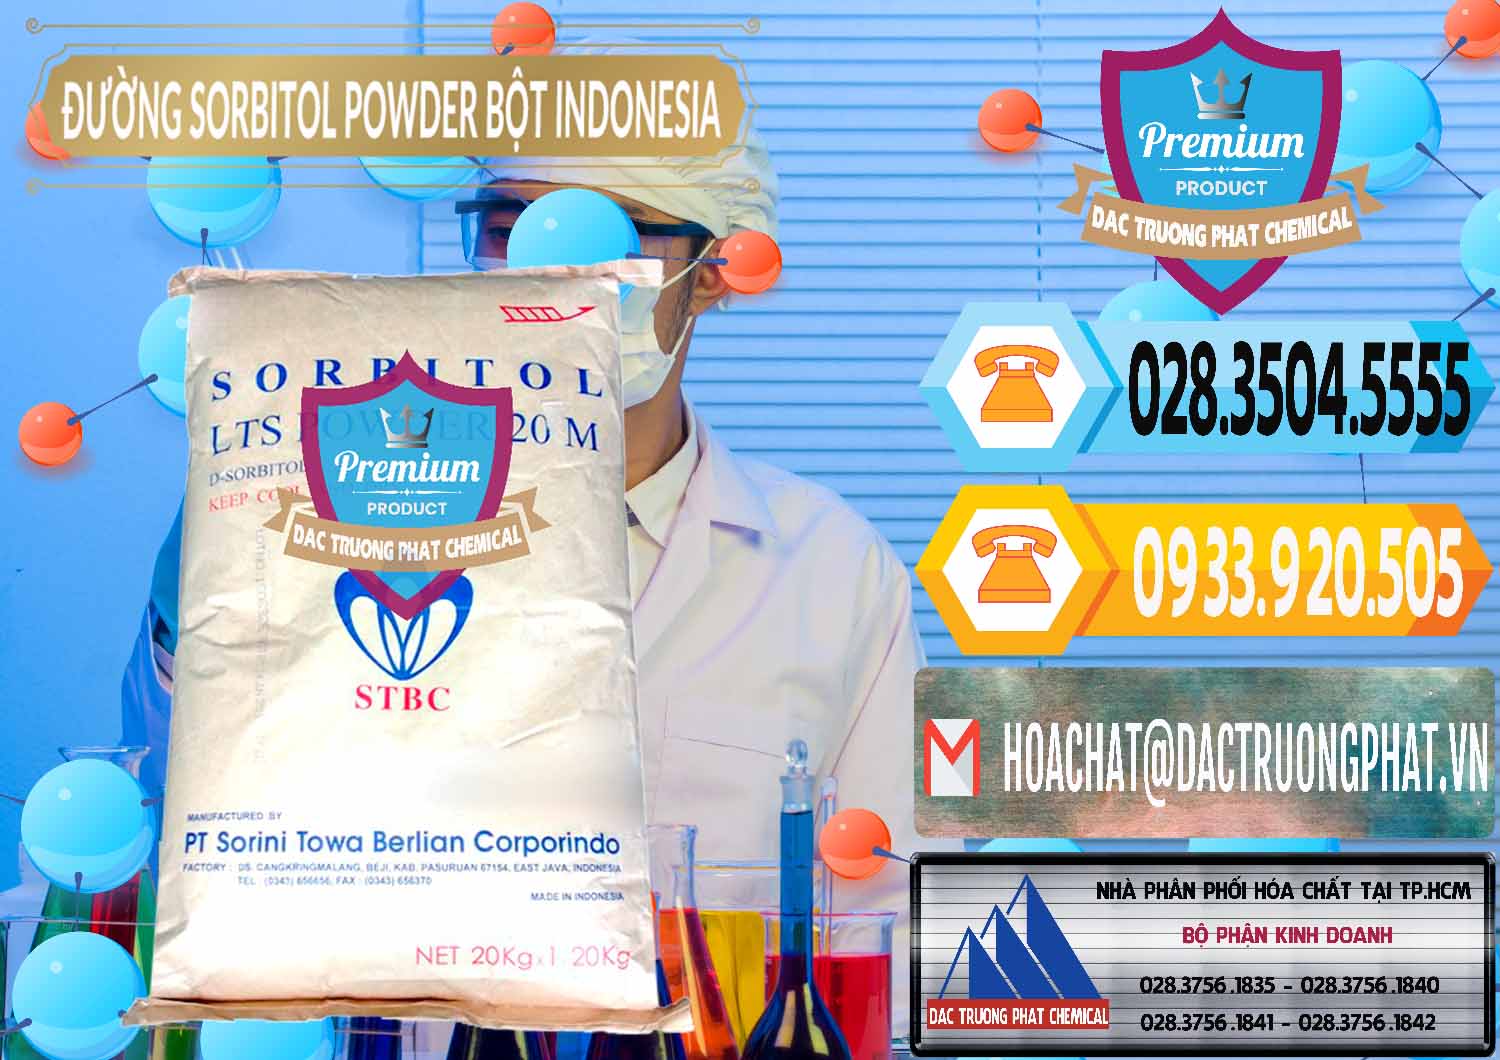 Nơi chuyên cung cấp & bán D-Sorbitol Bột - C6H14O6 Food Grade Indonesia - 0320 - Đơn vị nhập khẩu ( cung cấp ) hóa chất tại TP.HCM - hoachattayrua.net